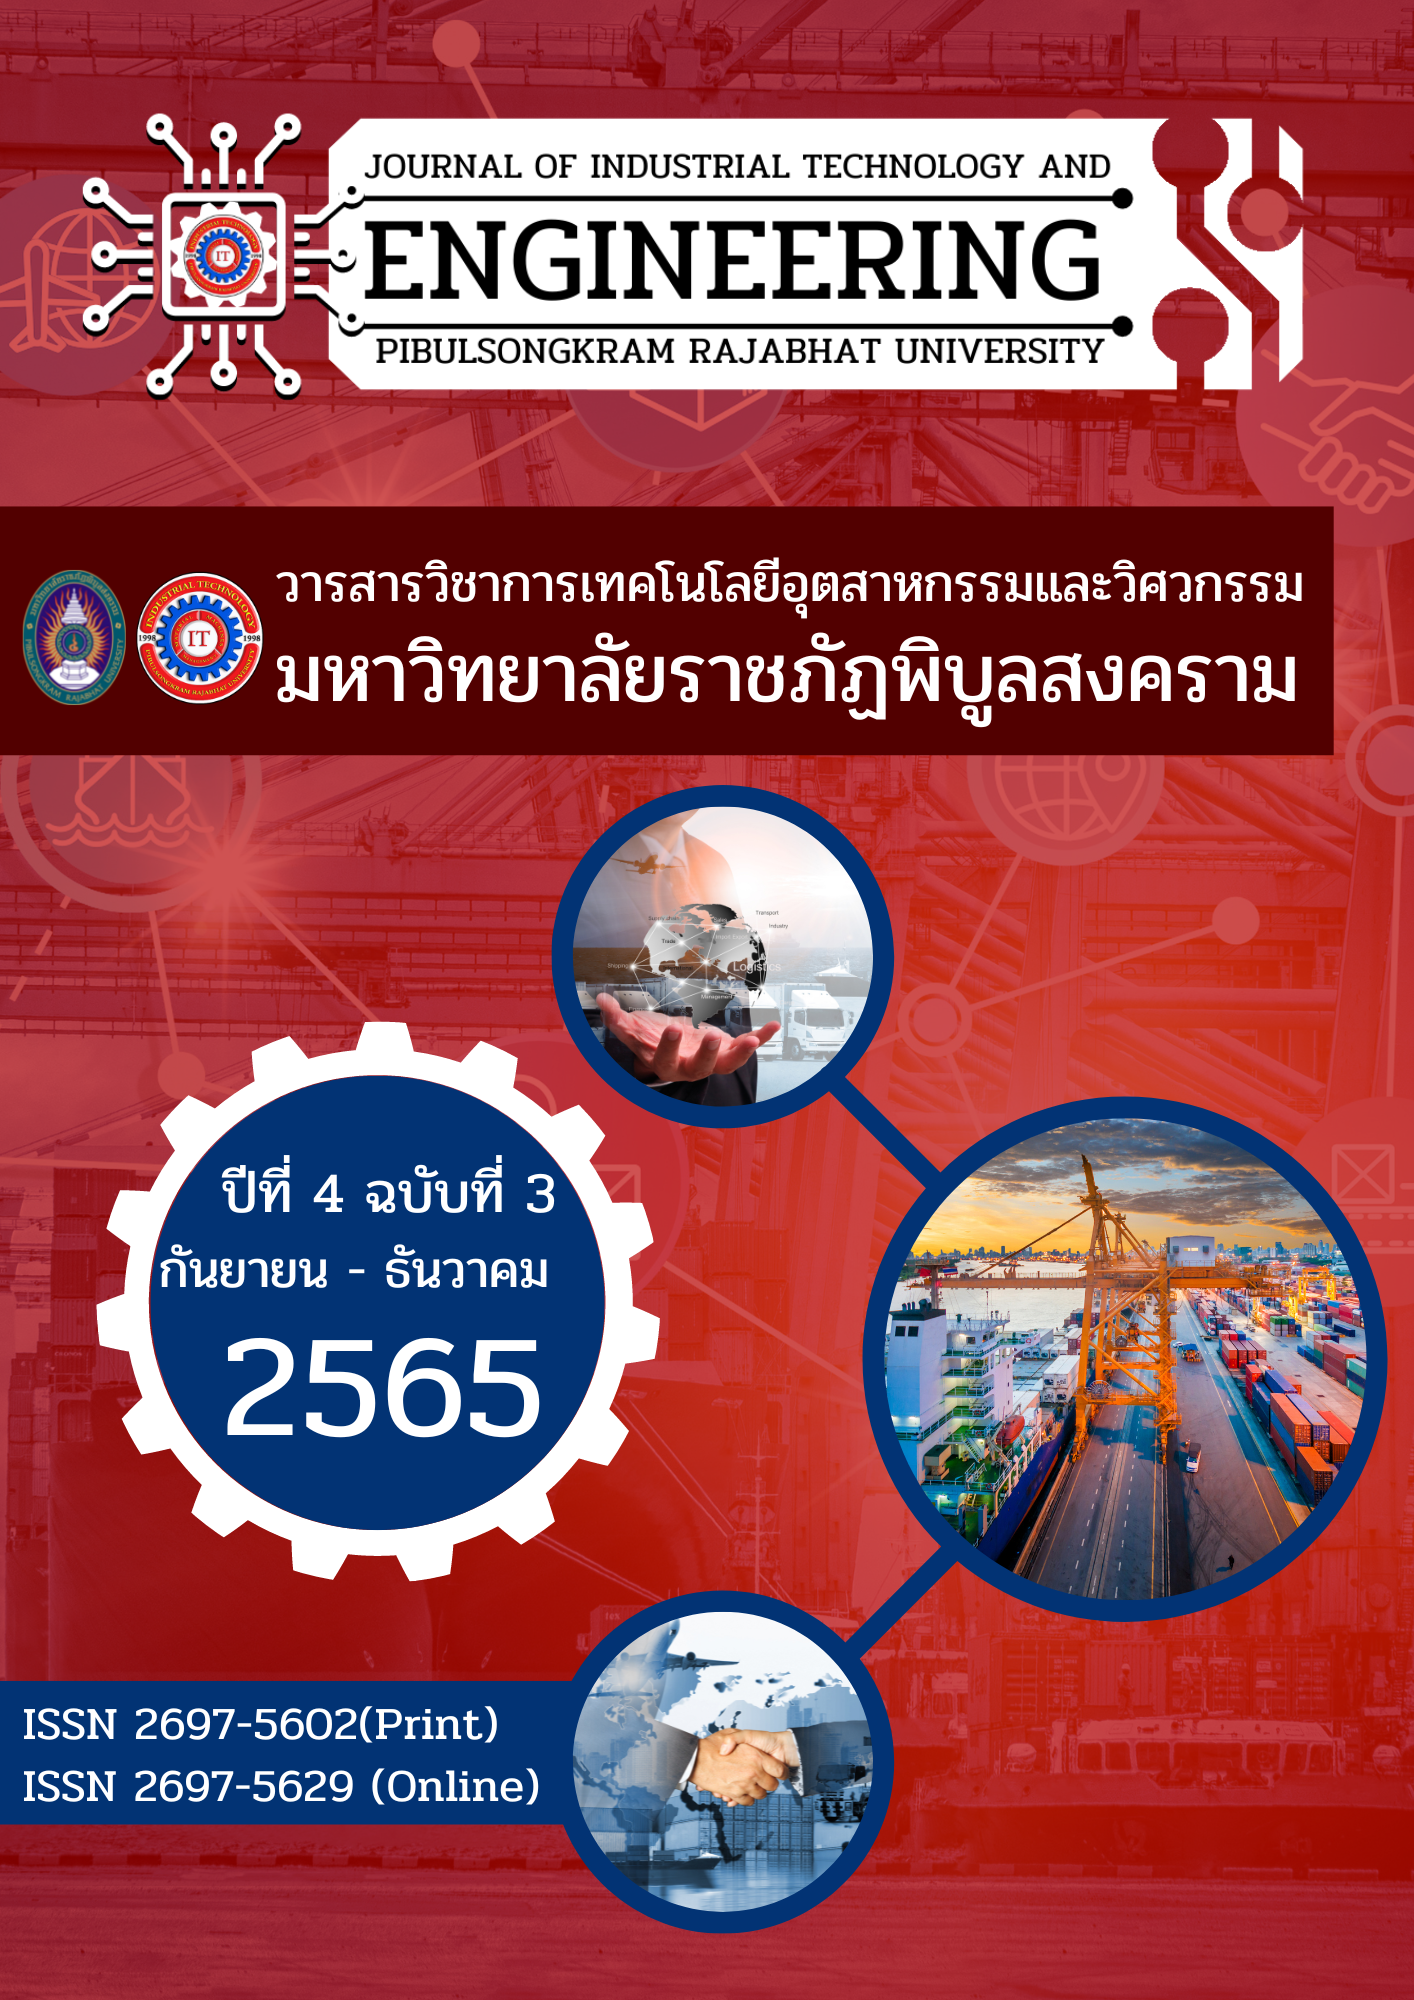 					ดู ปีที่ 4 ฉบับที่ 3 (2022): September 2022 - December 2022 (PSRU Journal of Industrial Technology and Engineering)
				